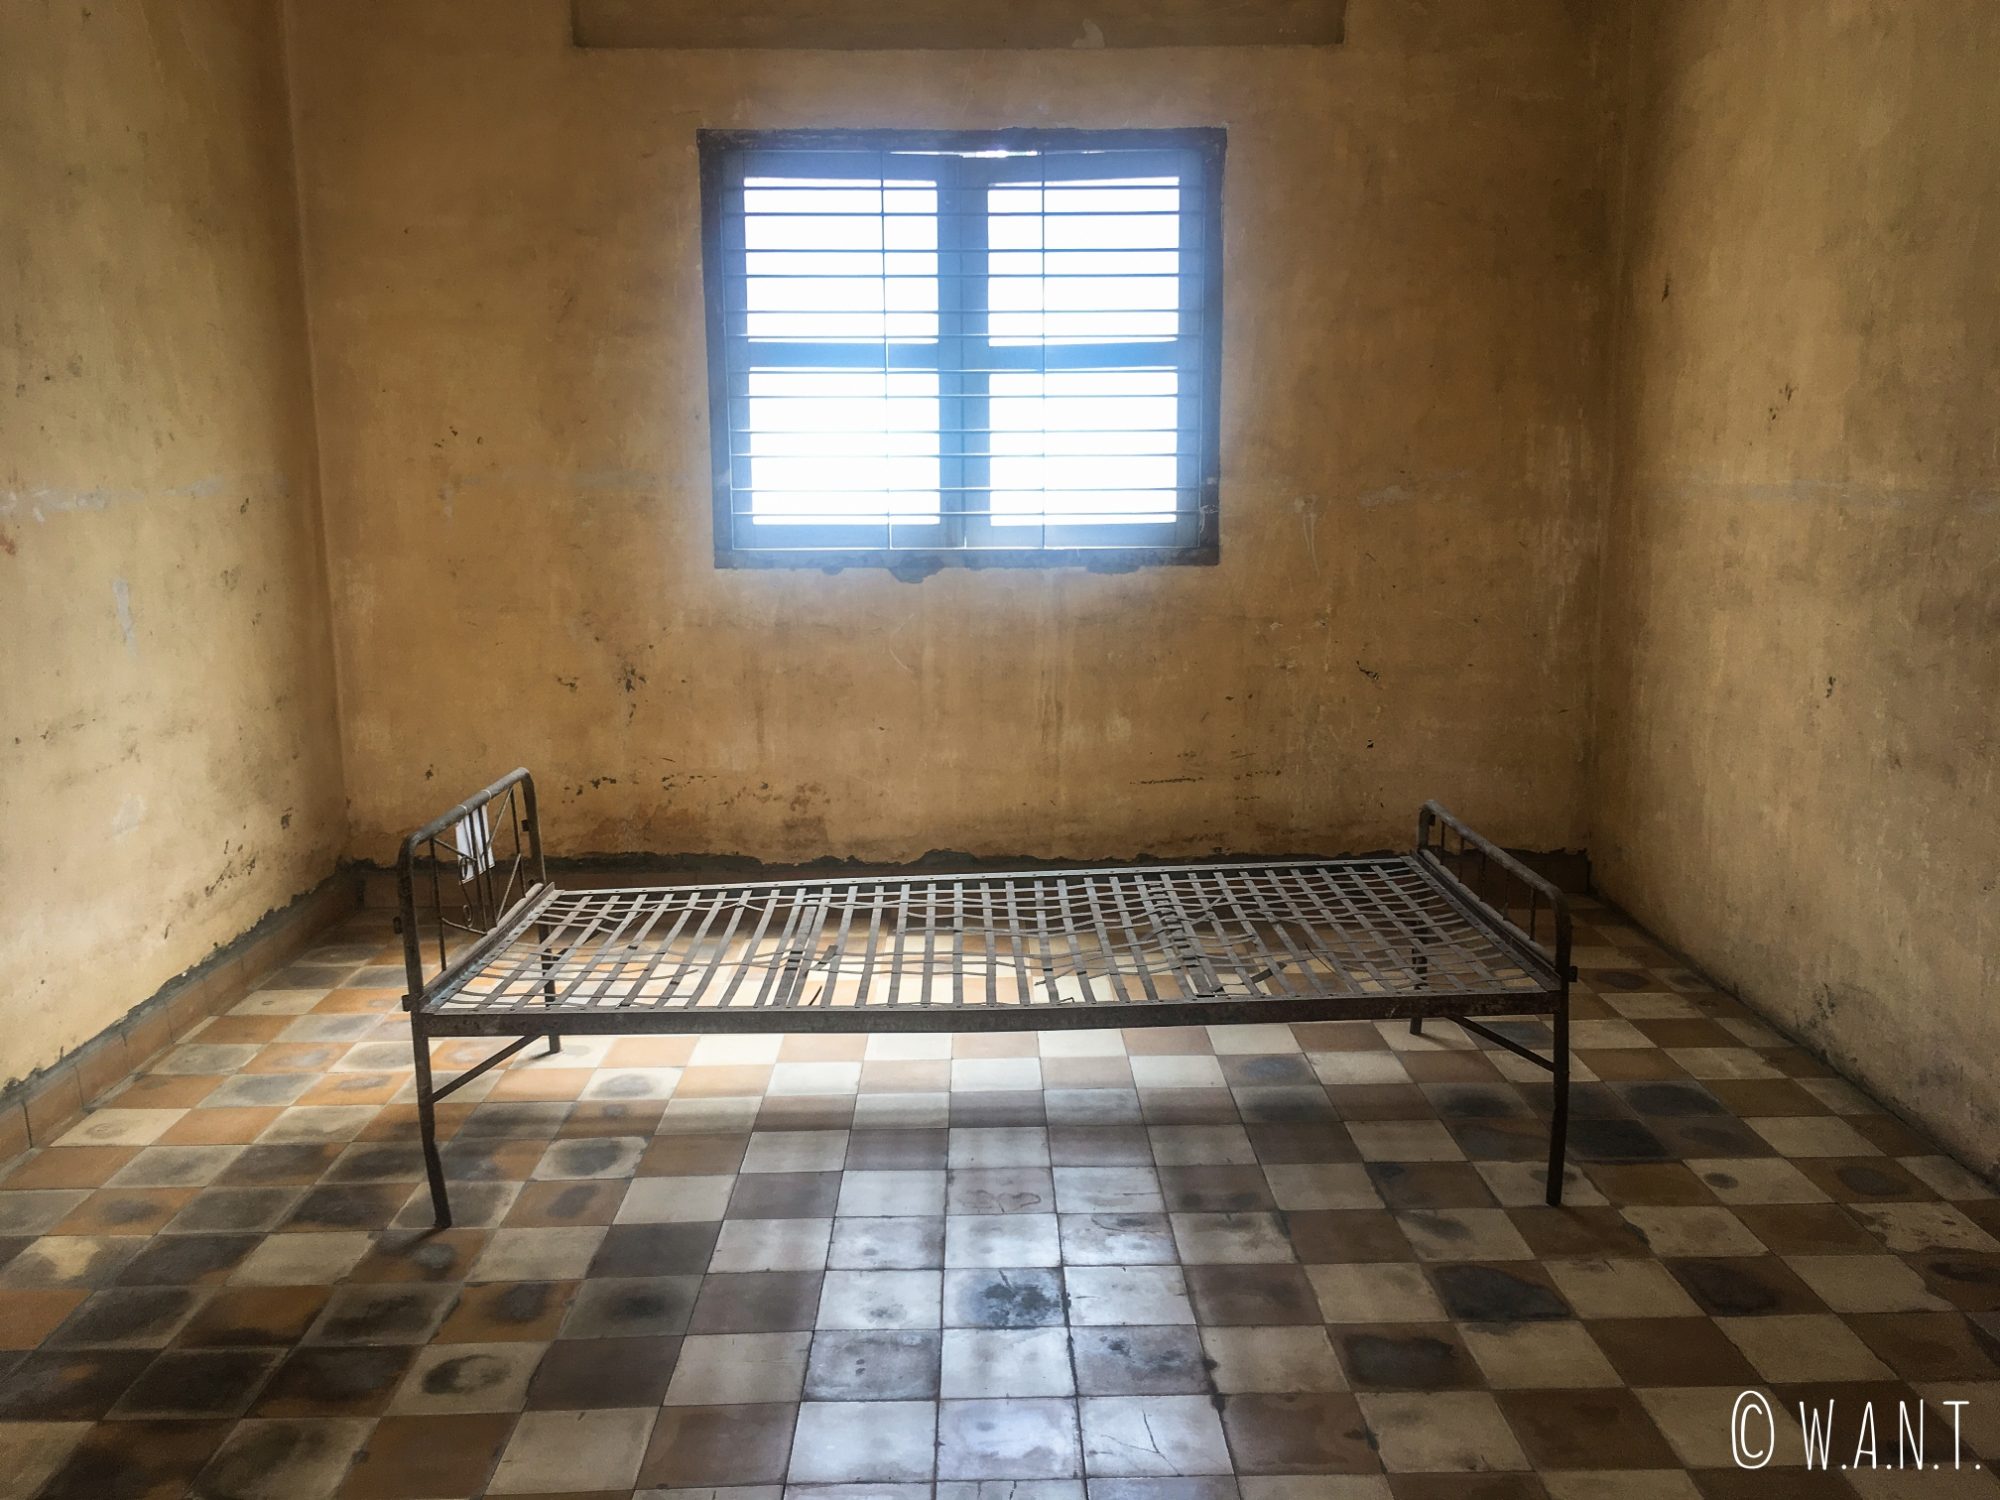 Cellule individuelle du bâtiment A de la prison S-21 à Phnom Penh